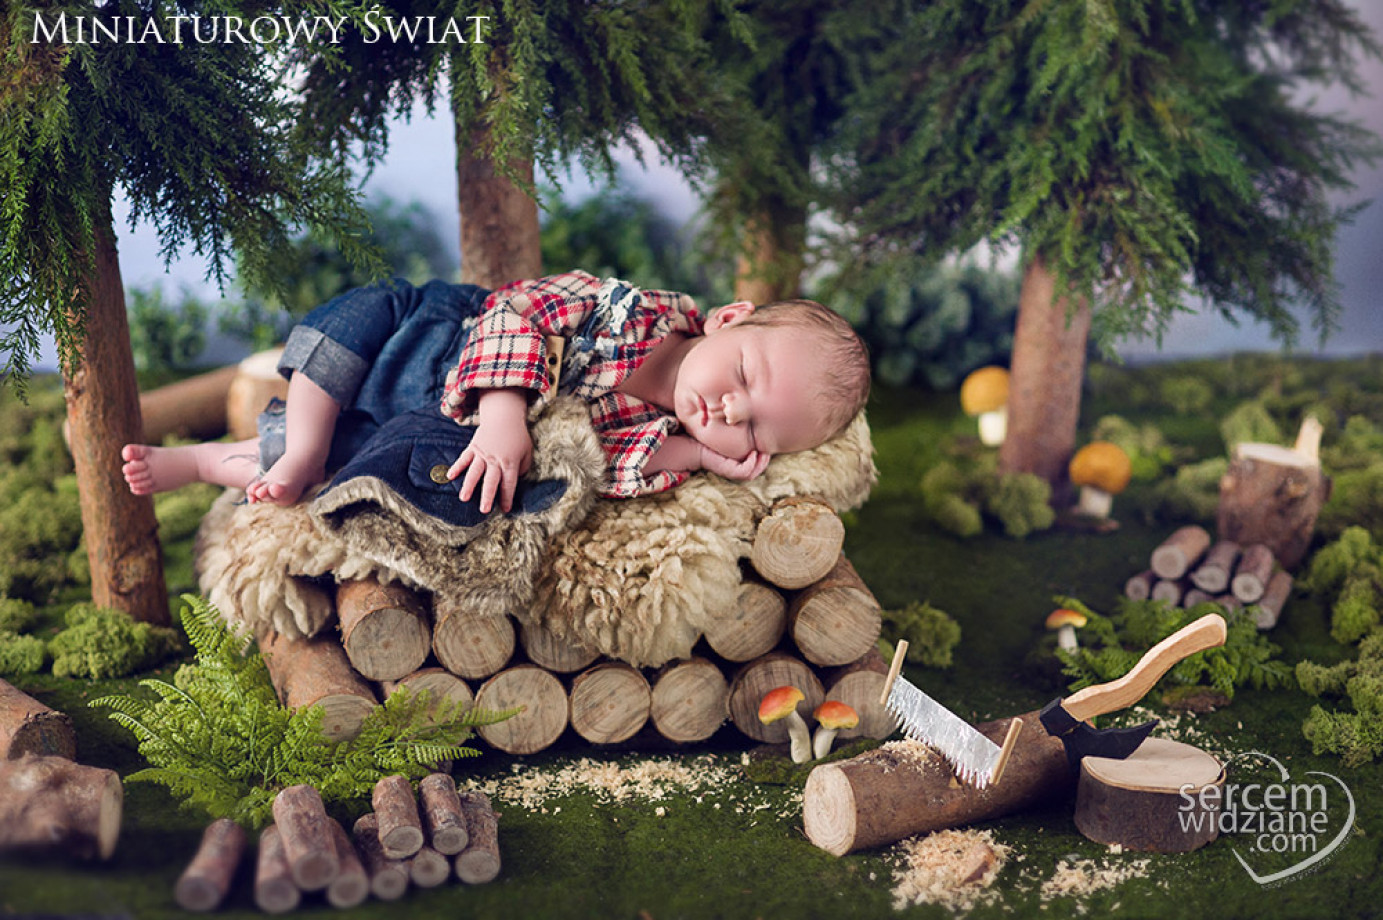 zdjęcia warszawa fotograf sercemwidziane-fotografia-noworodkowa-oraz-rodzinna portfolio zdjecia noworodkow sesje noworodkowe niemowlę